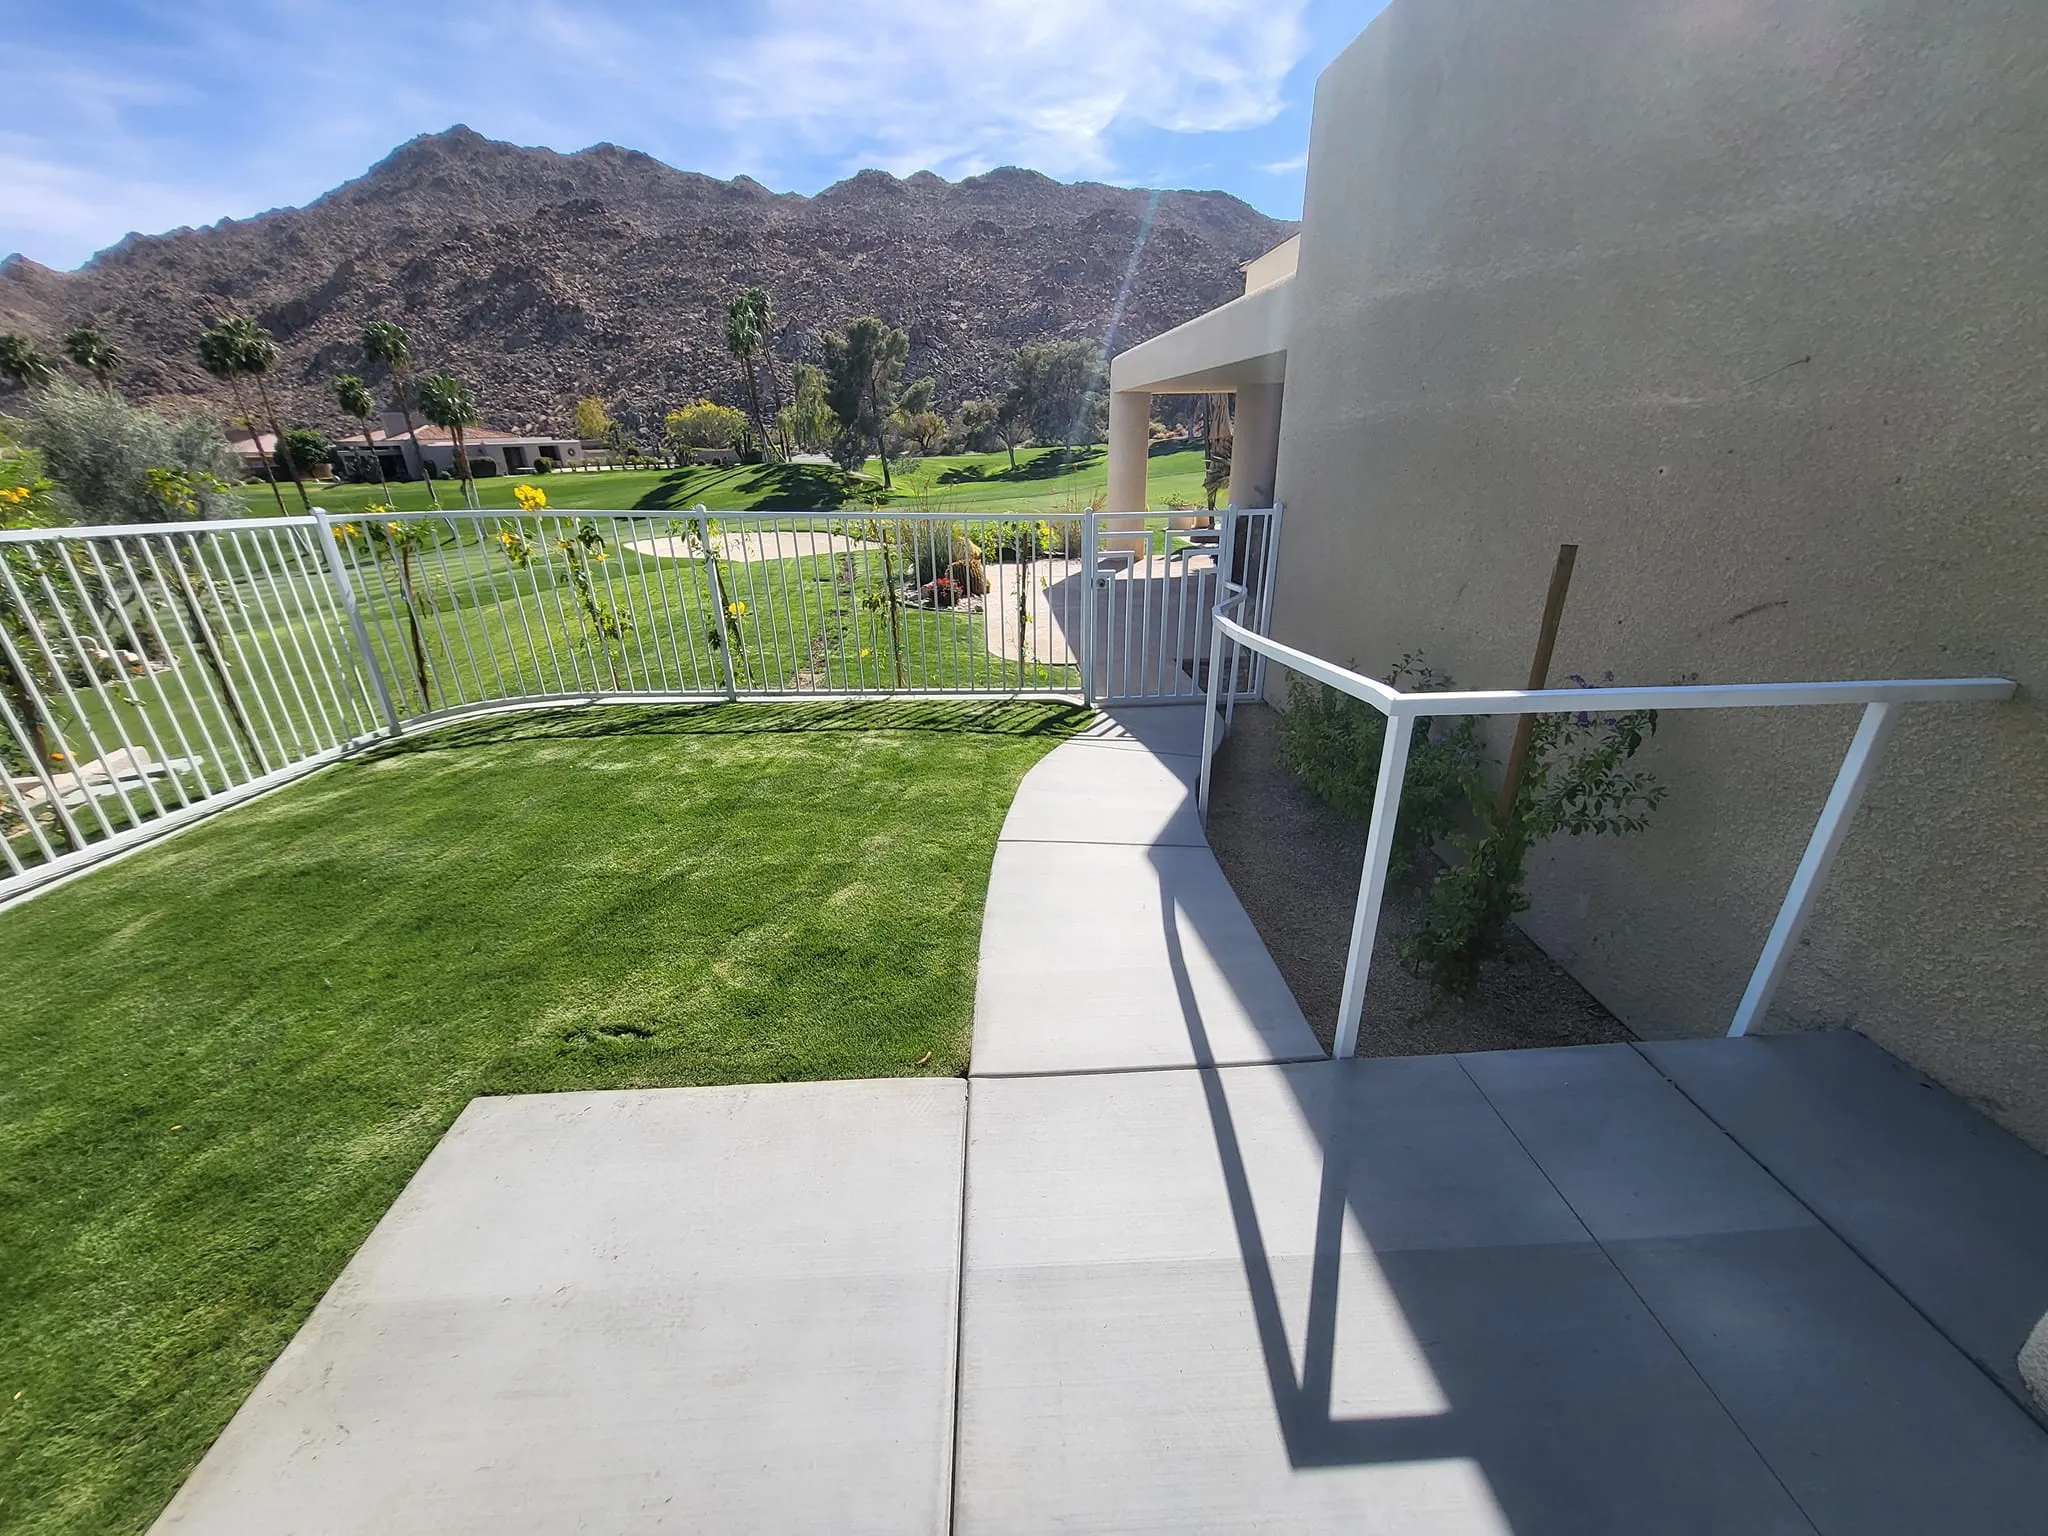 Lawn Care for EG Landscape in Coachella Valley, CA